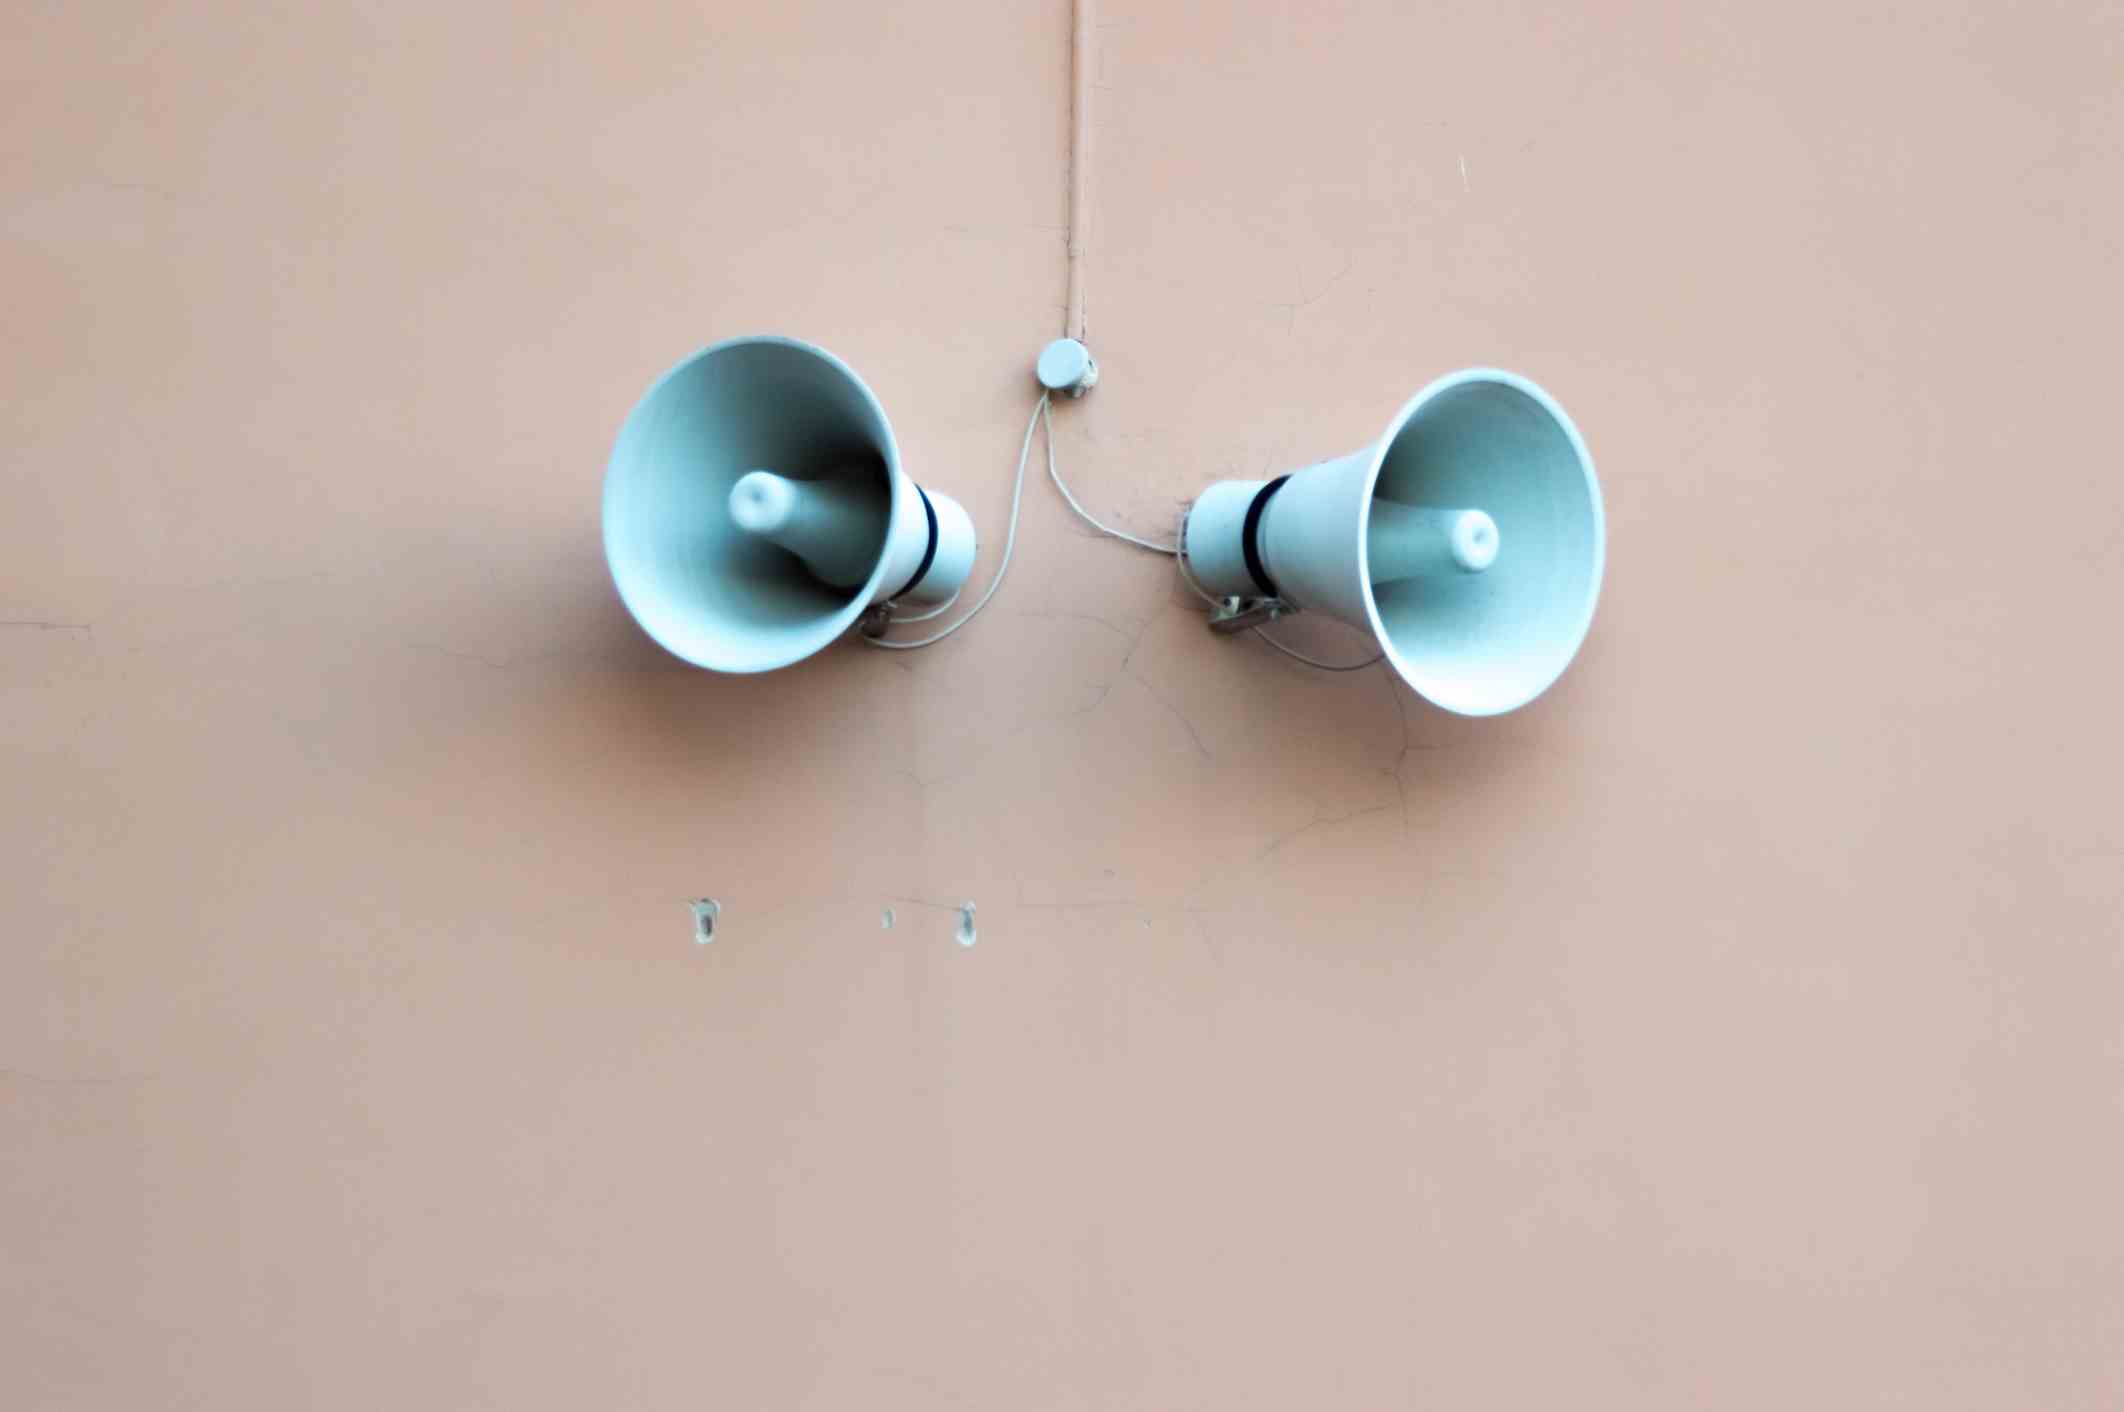 Aufnahme eines Lautsprechers an der Wand